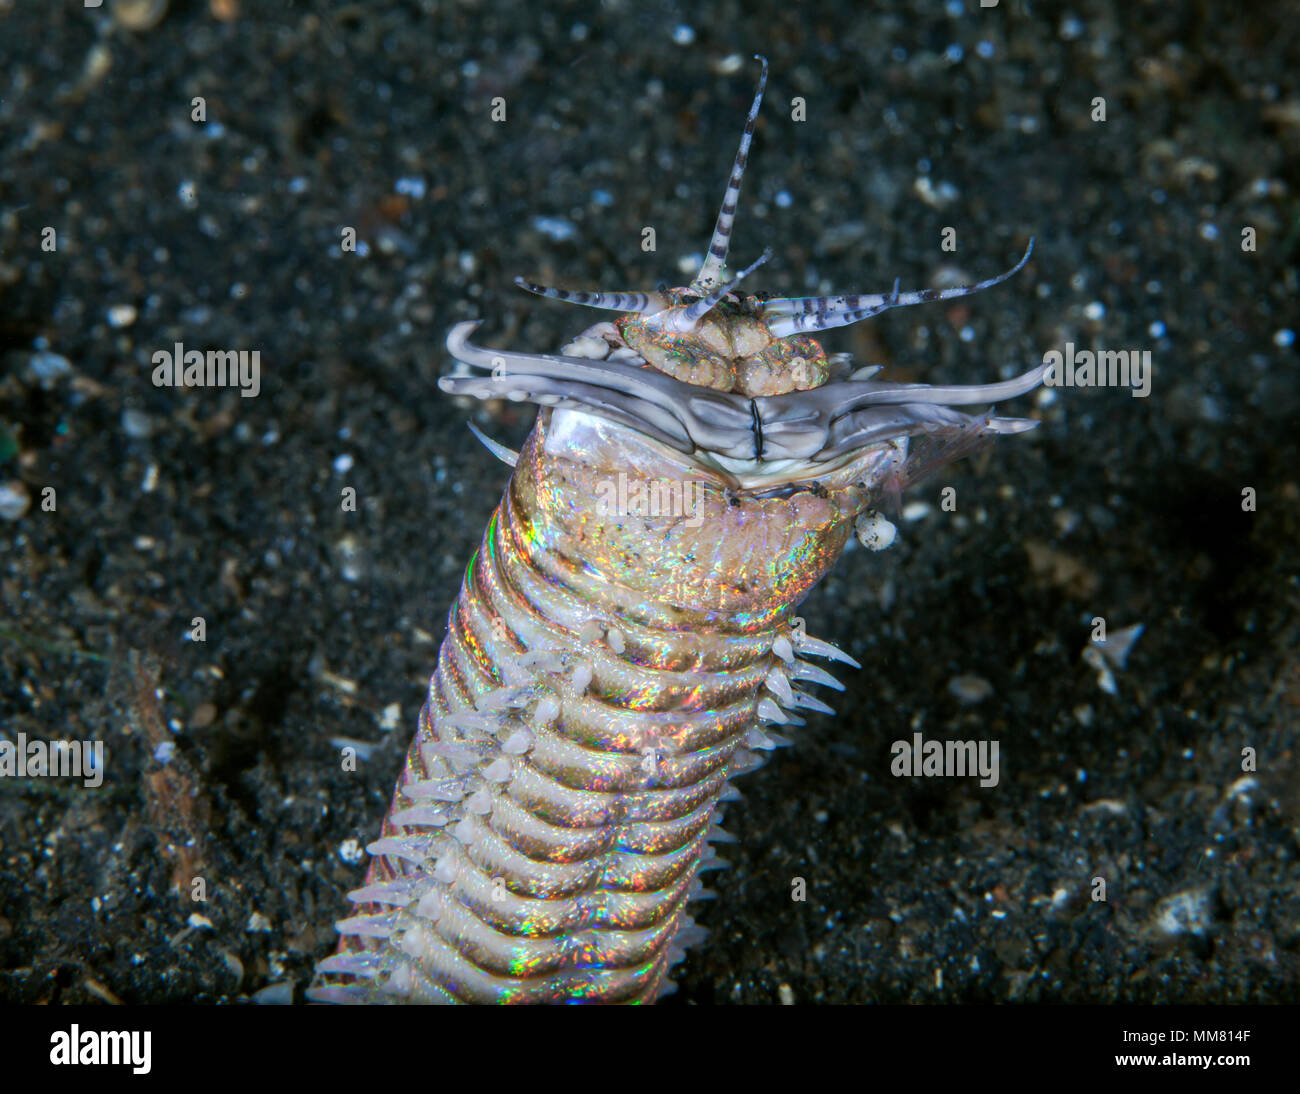 Schließen Sie herauf Bild eines Bobbit Wurm (Eunice aphroditois). Lembeh Straits, Indonesien. Stockfoto